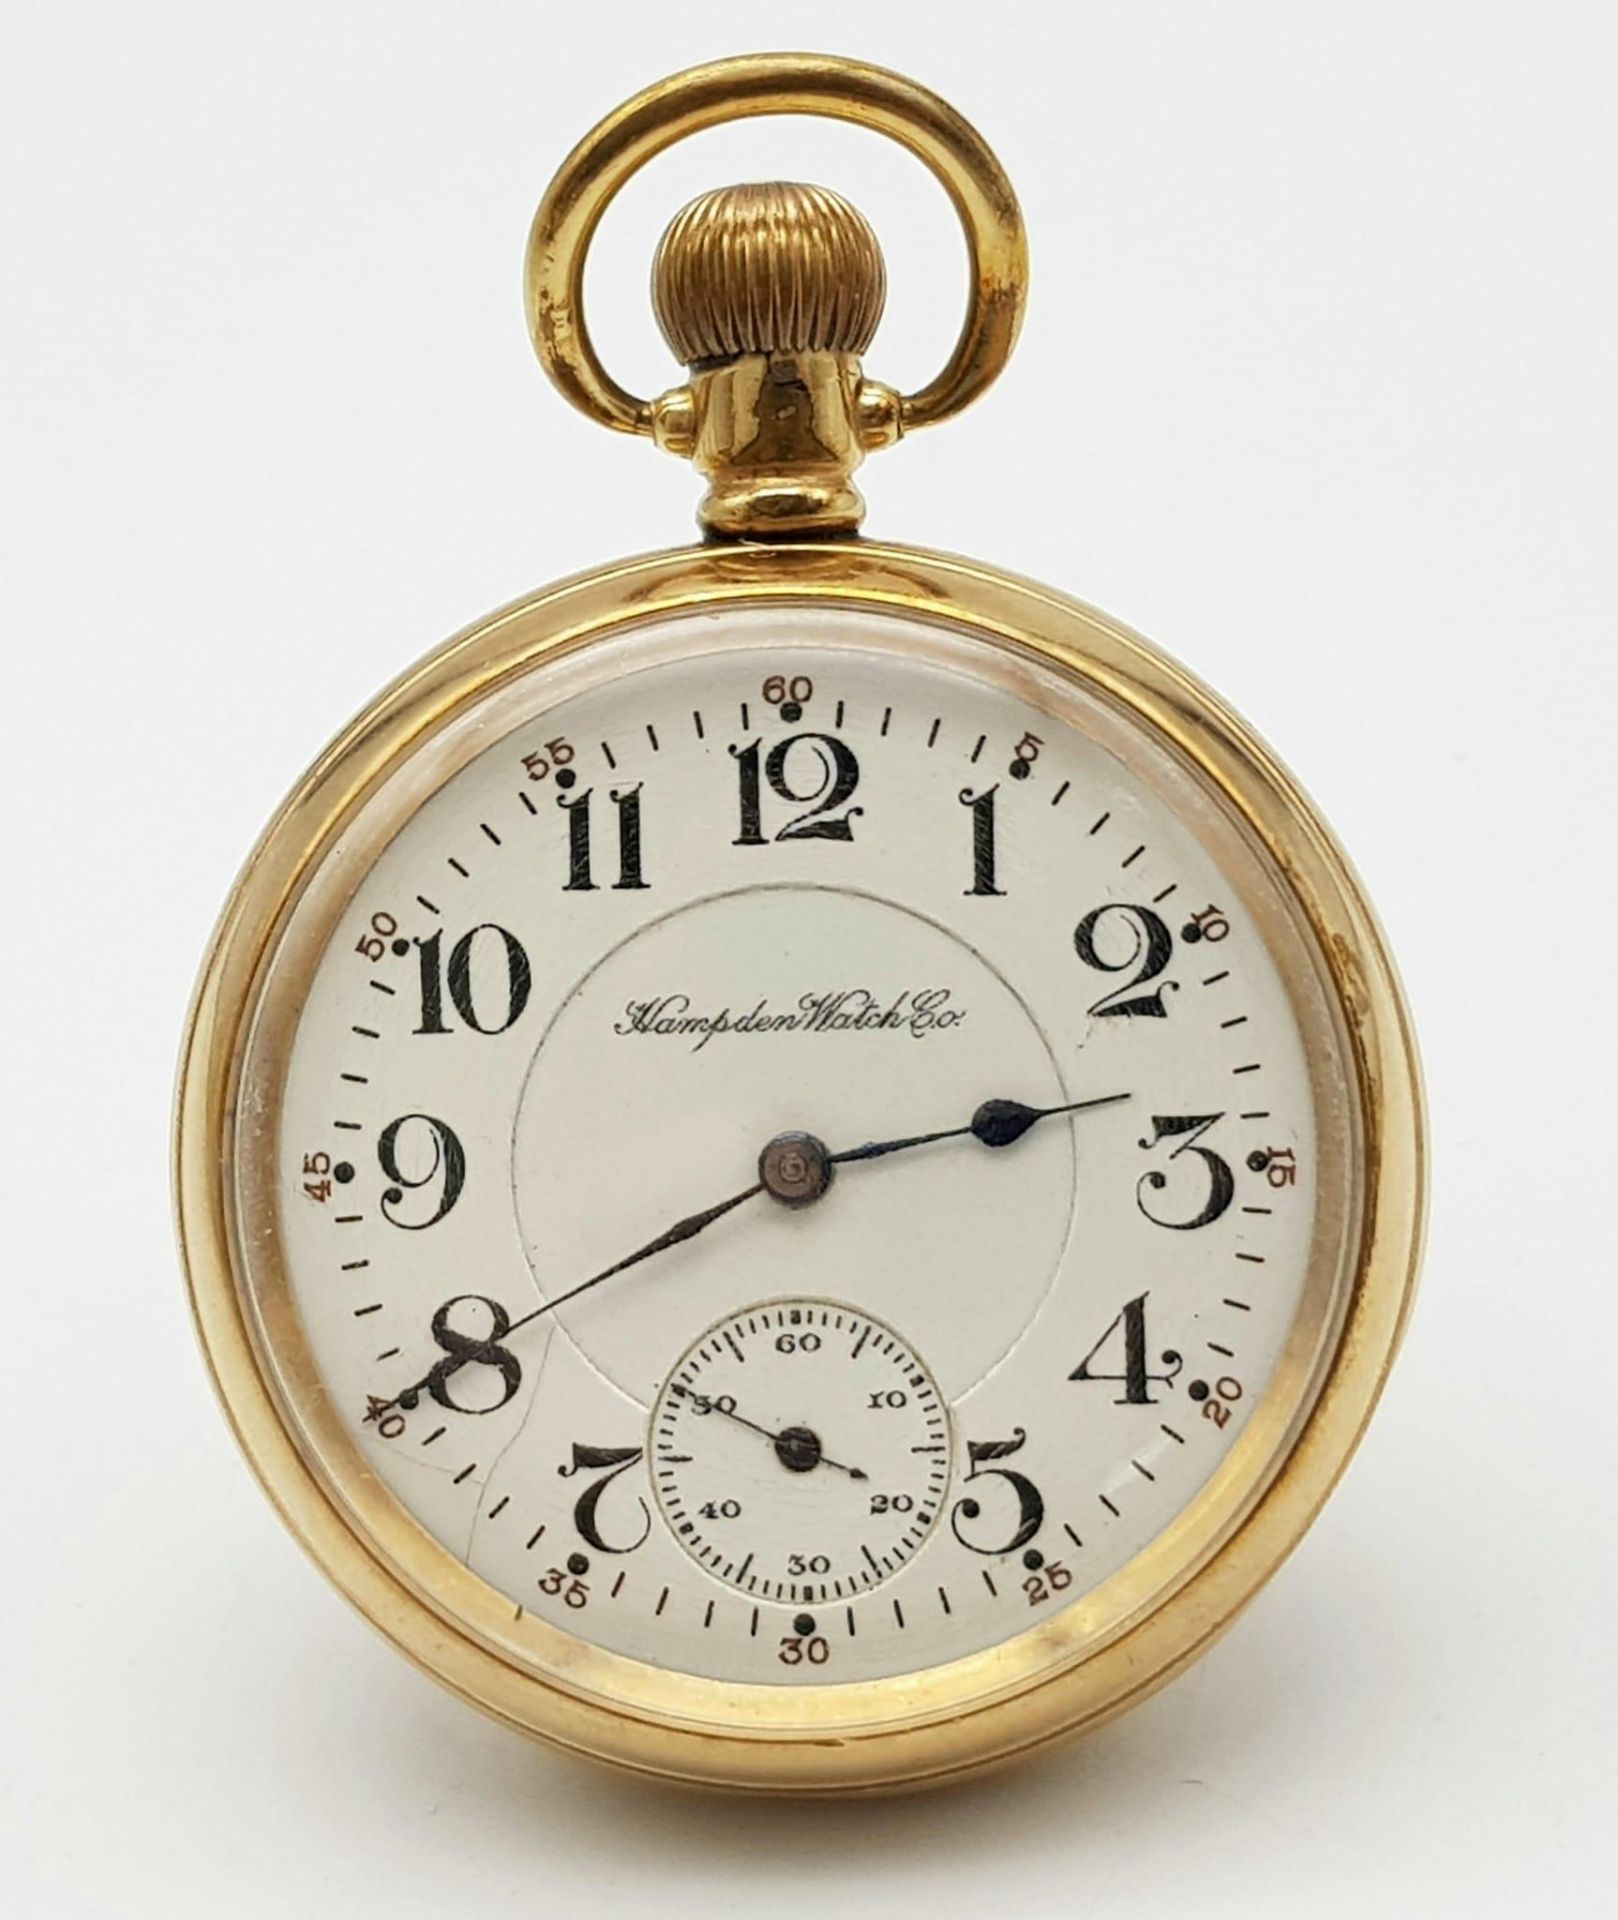 An Antique (1915) Gold Plated Hampden Watch Co. Pocket Watch. 21 jewels. 3328478 movement. Top